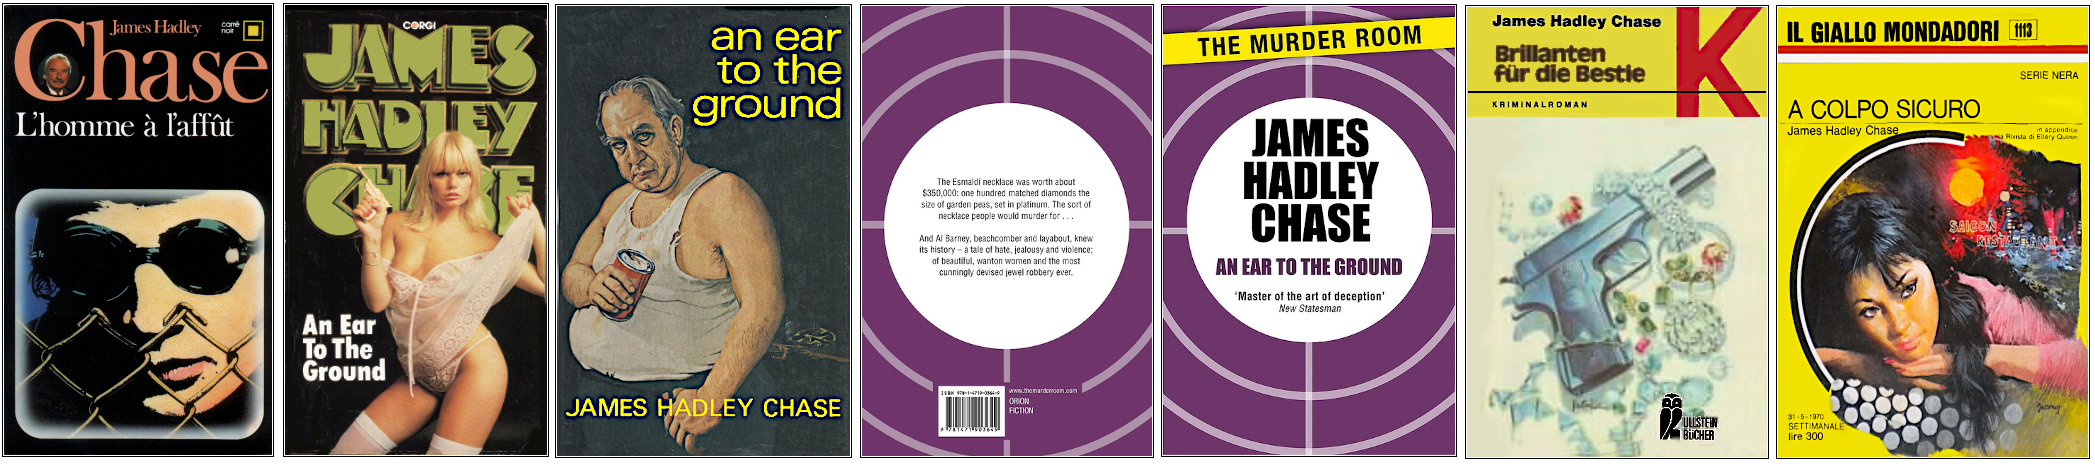 James Hadley Chase - L'Homme à l'affût - Éditions Carré noir, Corgi, Robert Hale, Orion, Ullstein Bücher et Mondadori